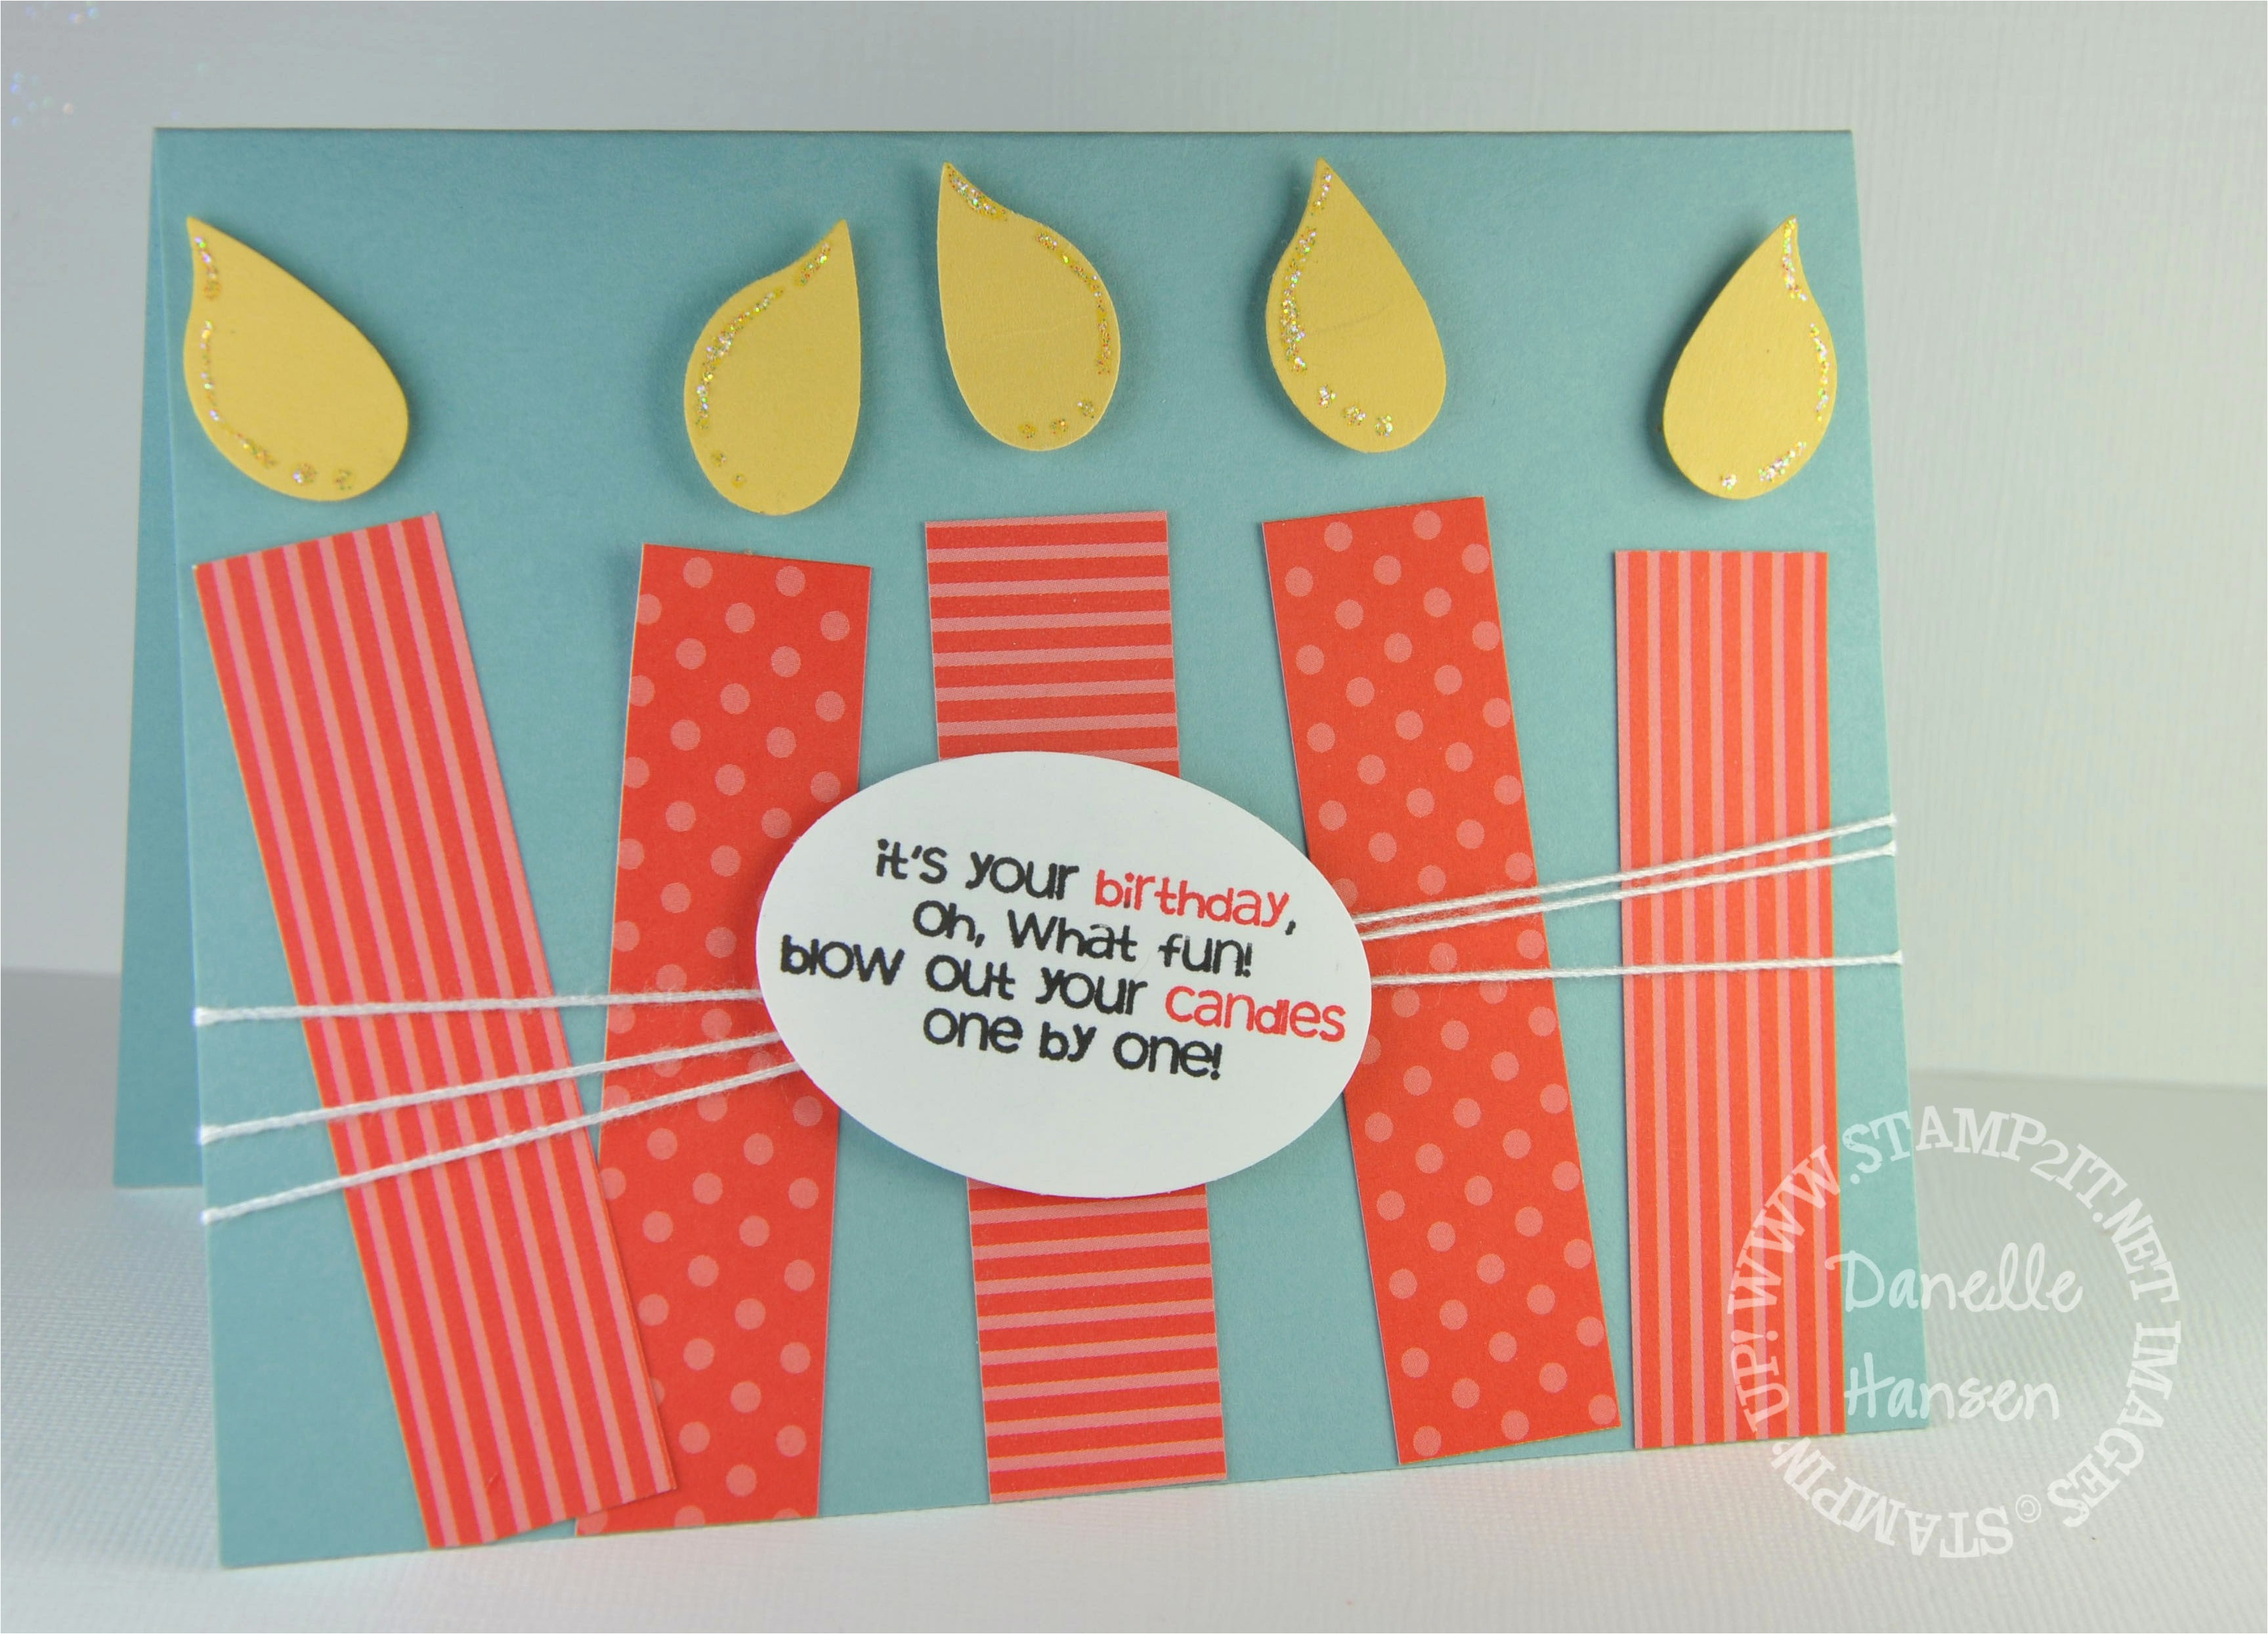 Handmade Birthday Card Ideas For Husband Diy Birthday Cards For Husband Creative Handmade Birthday Card Ideas